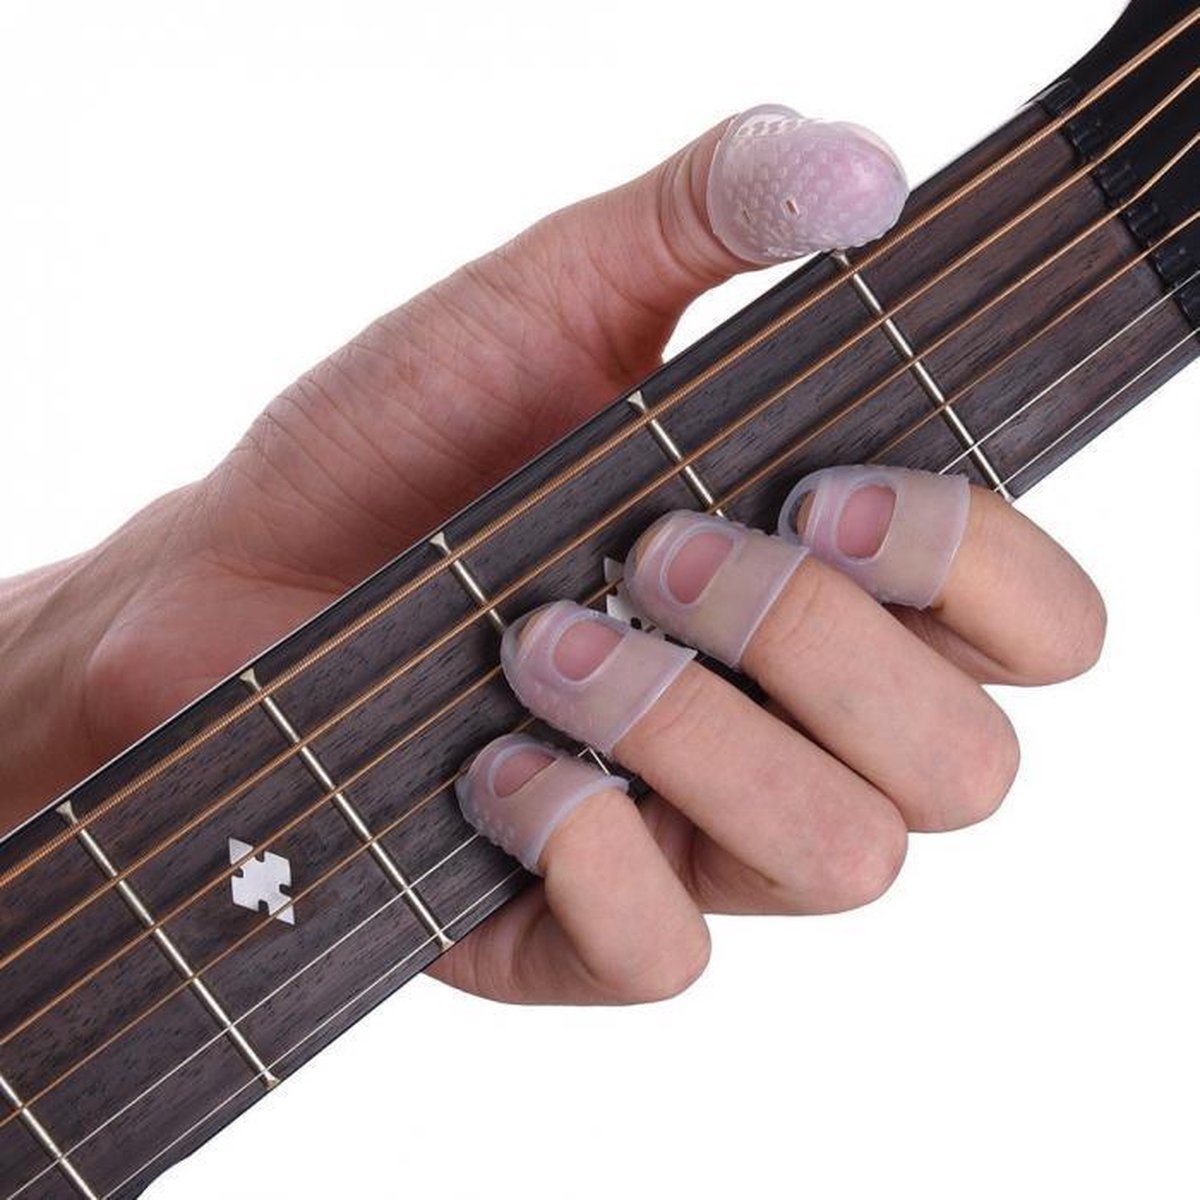 10 pièces Protecteur De Doigts Blanc En Silicone Pour Guitare